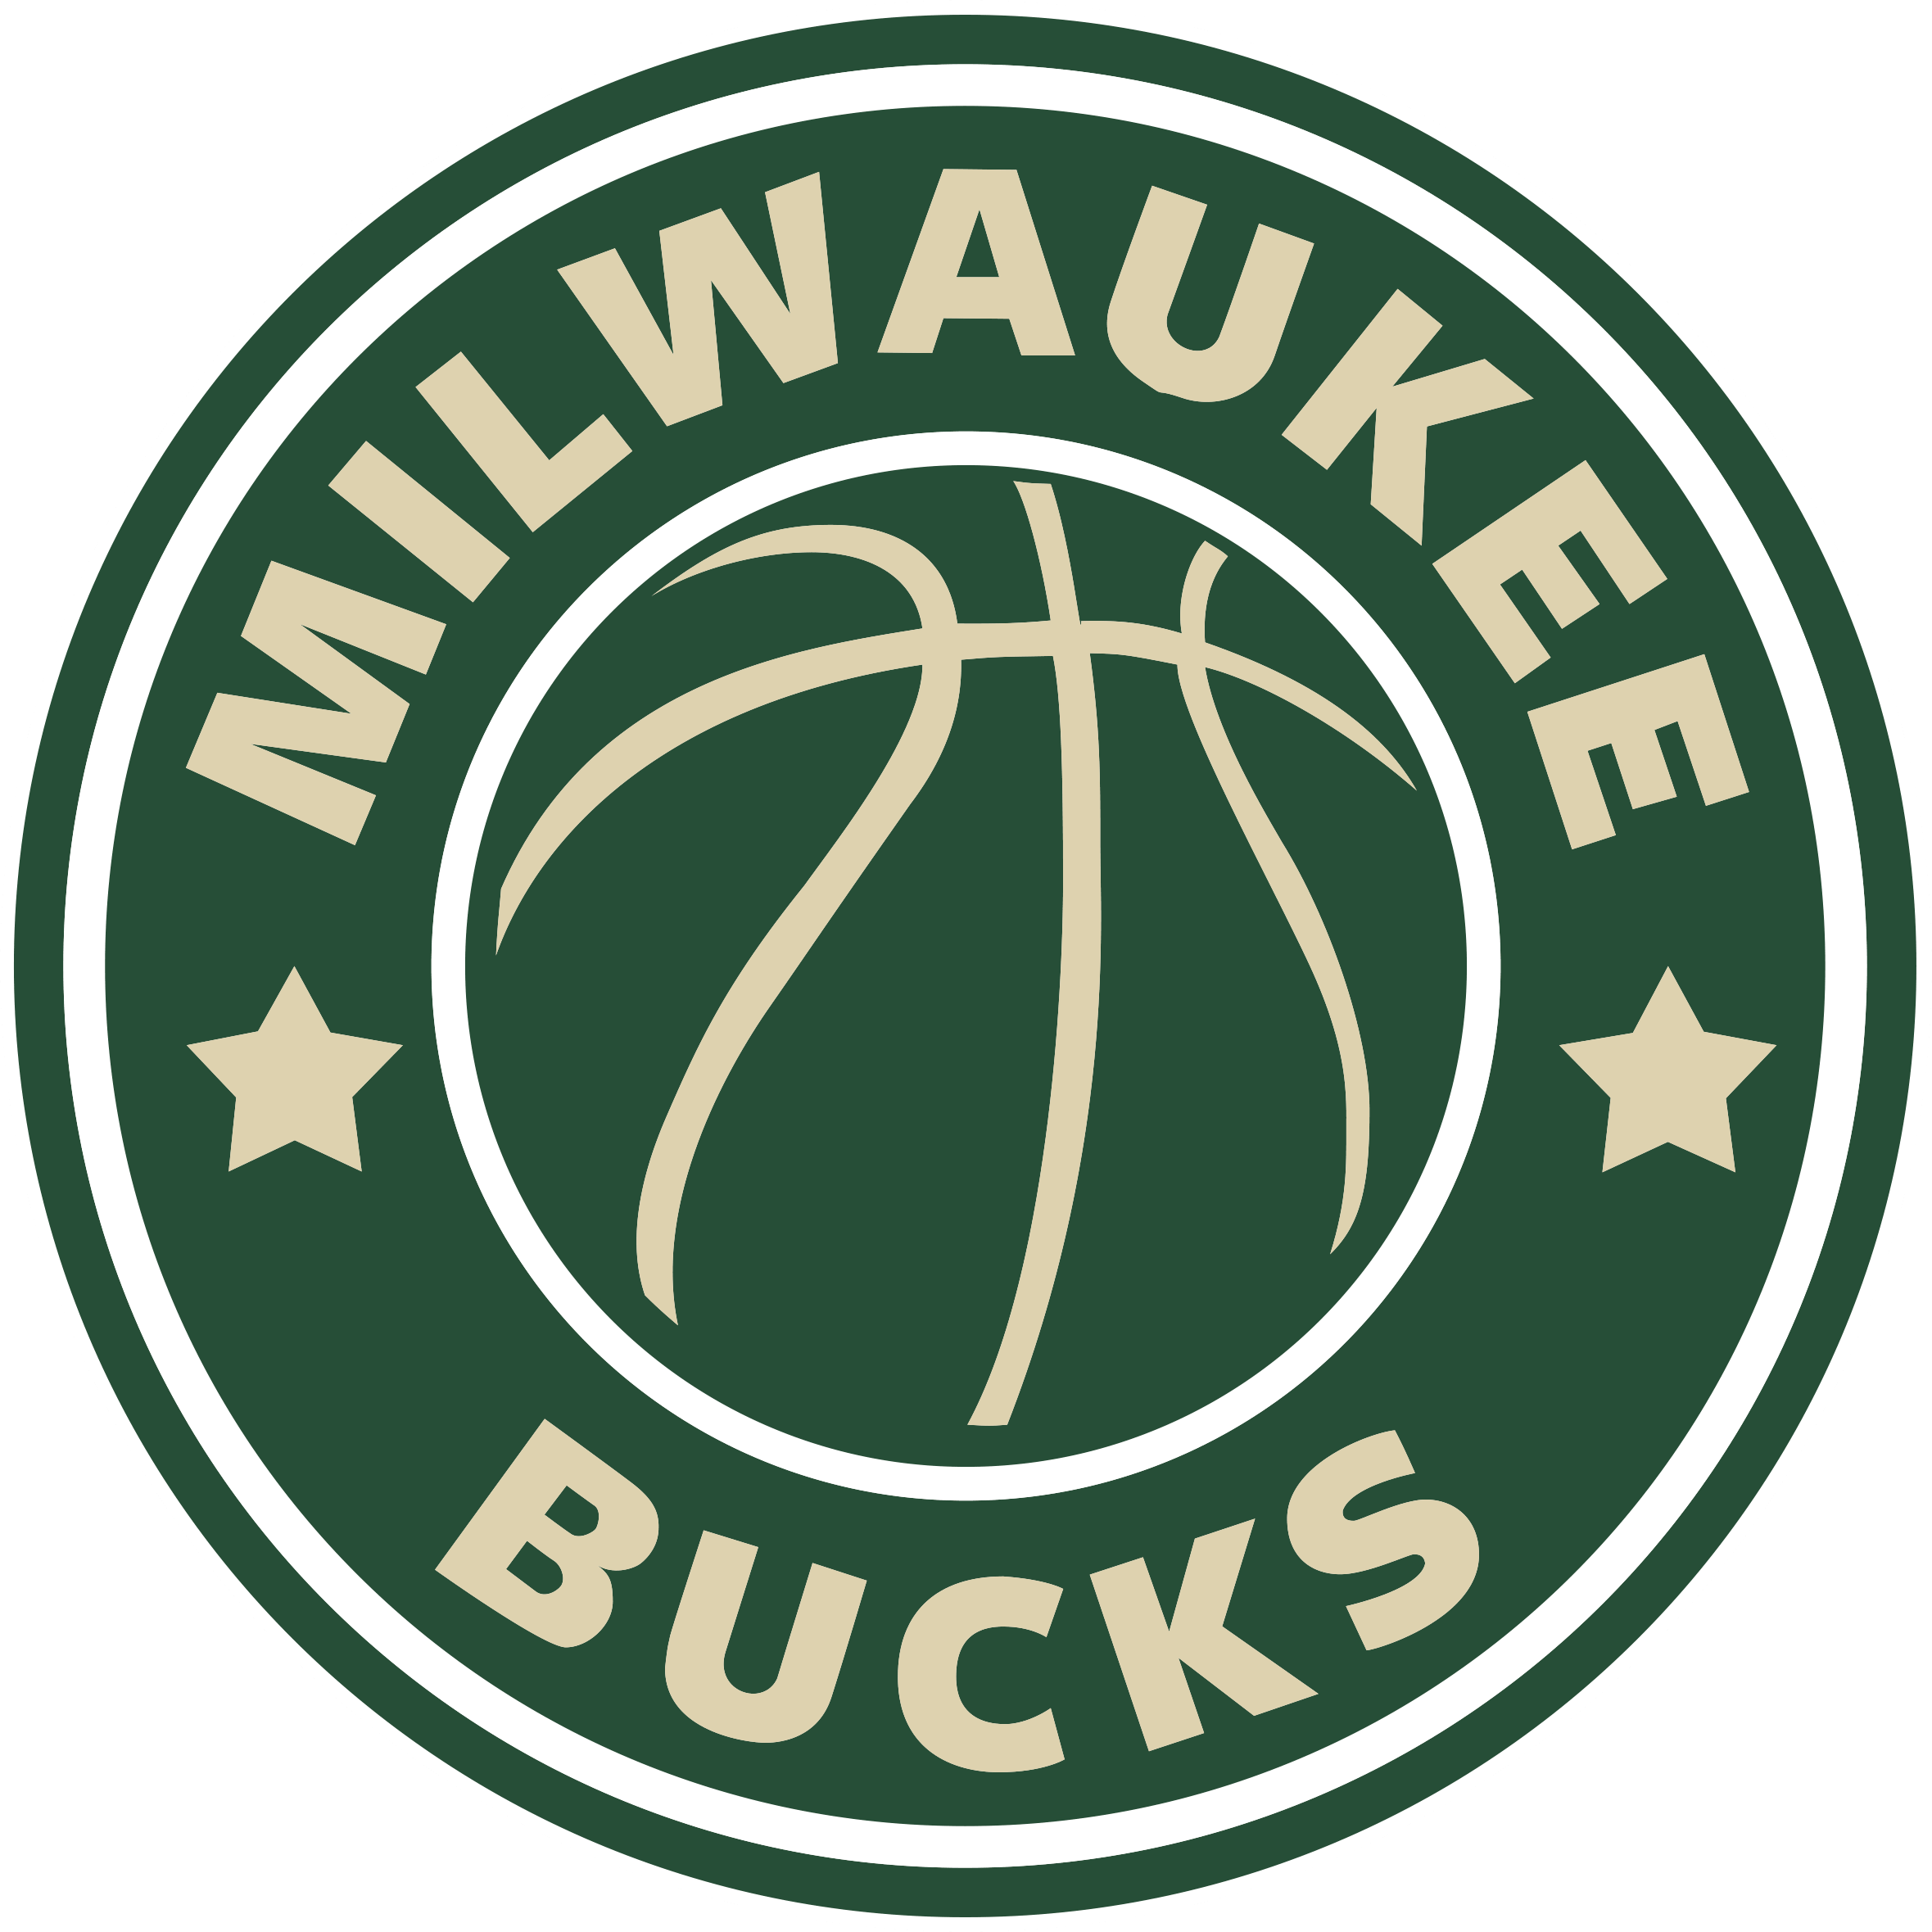 Milwaukee Bucks rumors